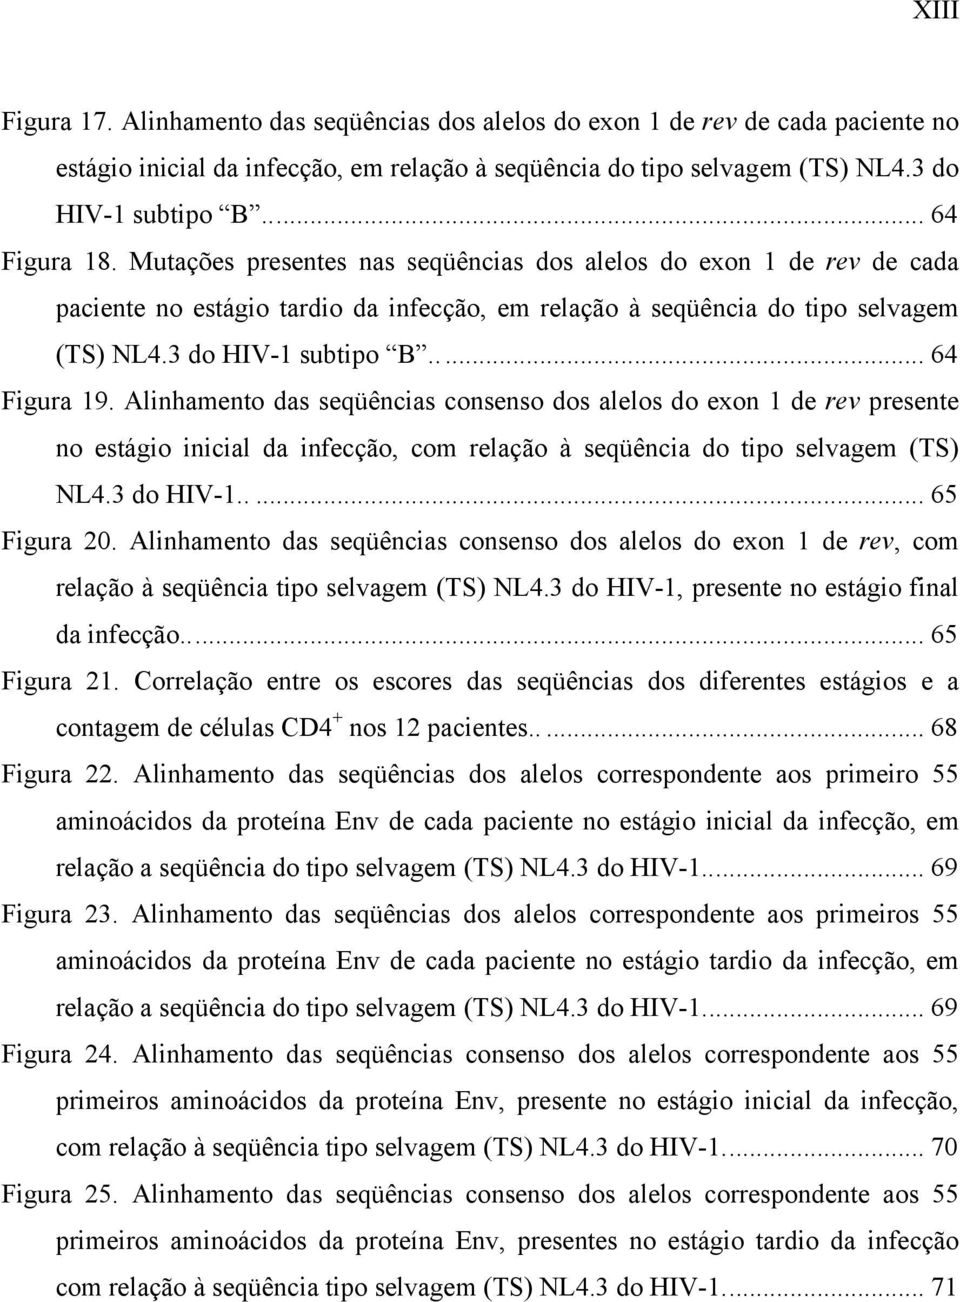 .... 64 Figura 19. Alinhamento das seqüências consenso dos alelos do exon 1 de rev presente no estágio inicial da infecção, com relação à seqüência do tipo selvagem (TS) NL4.3 do HIV-1..... 65 Figura 20.